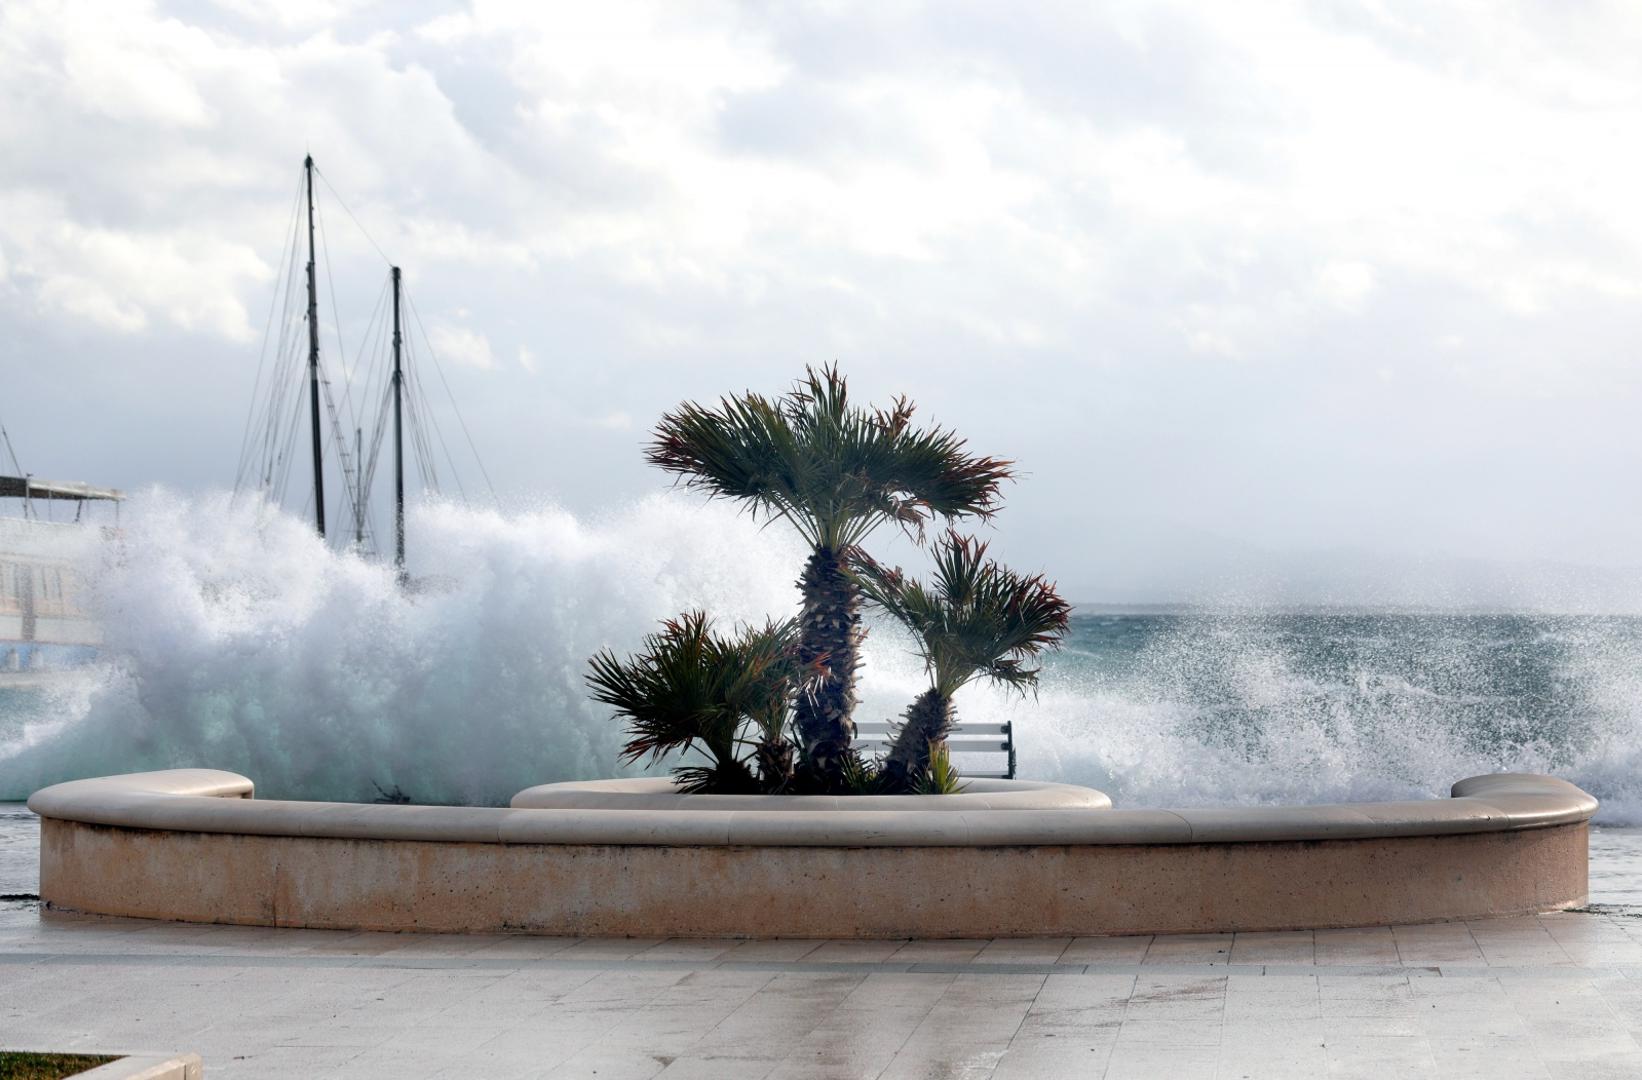 06.12.2020., Vodice - Orkansko jugo podizalo valove koji su zalijevali rivu.
Photo: Dusko Jaramaz/PIXSELL